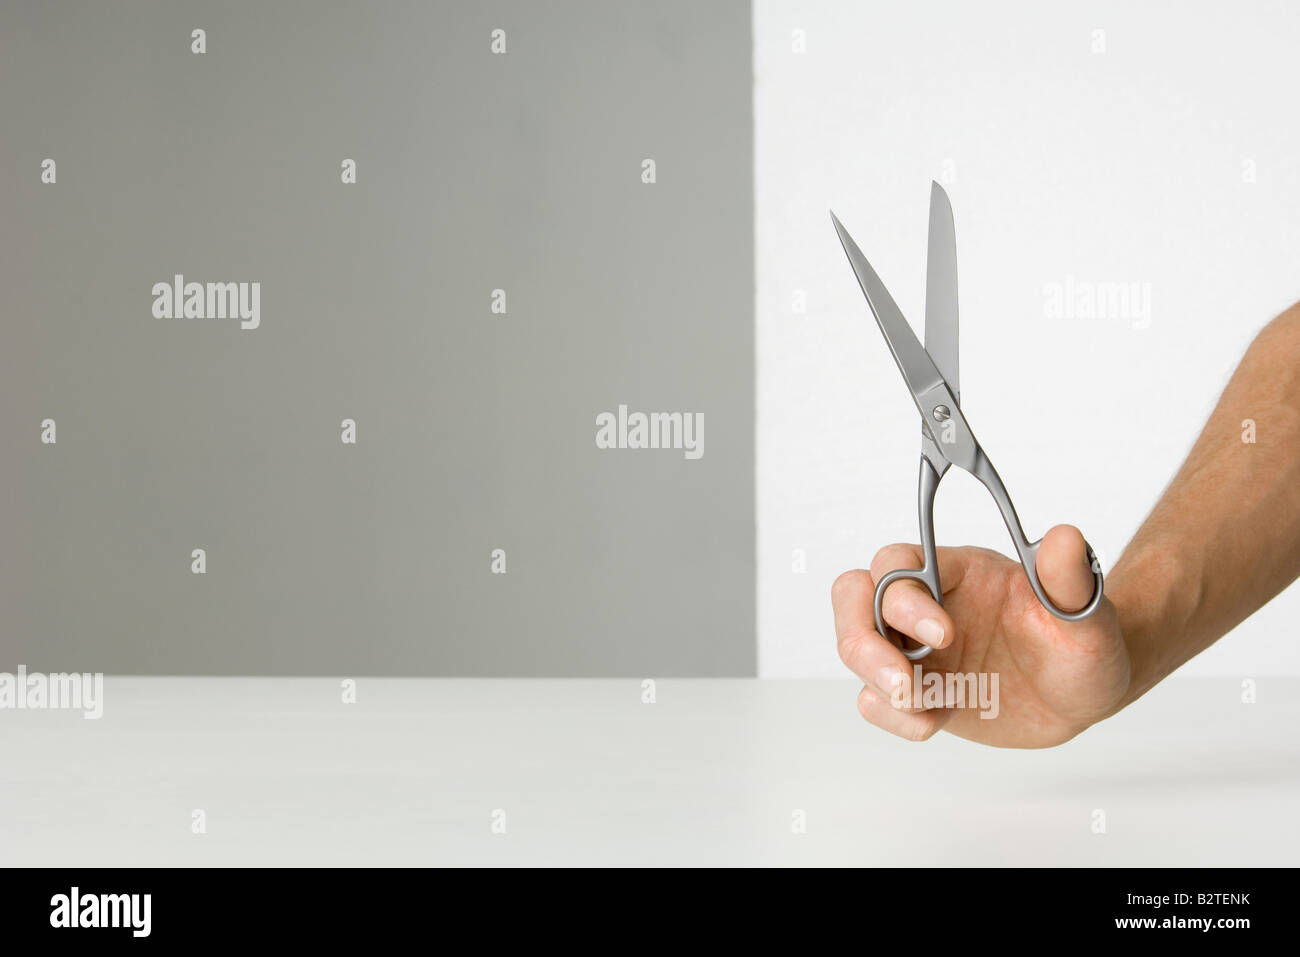 Hand holding scissors Stock Photo